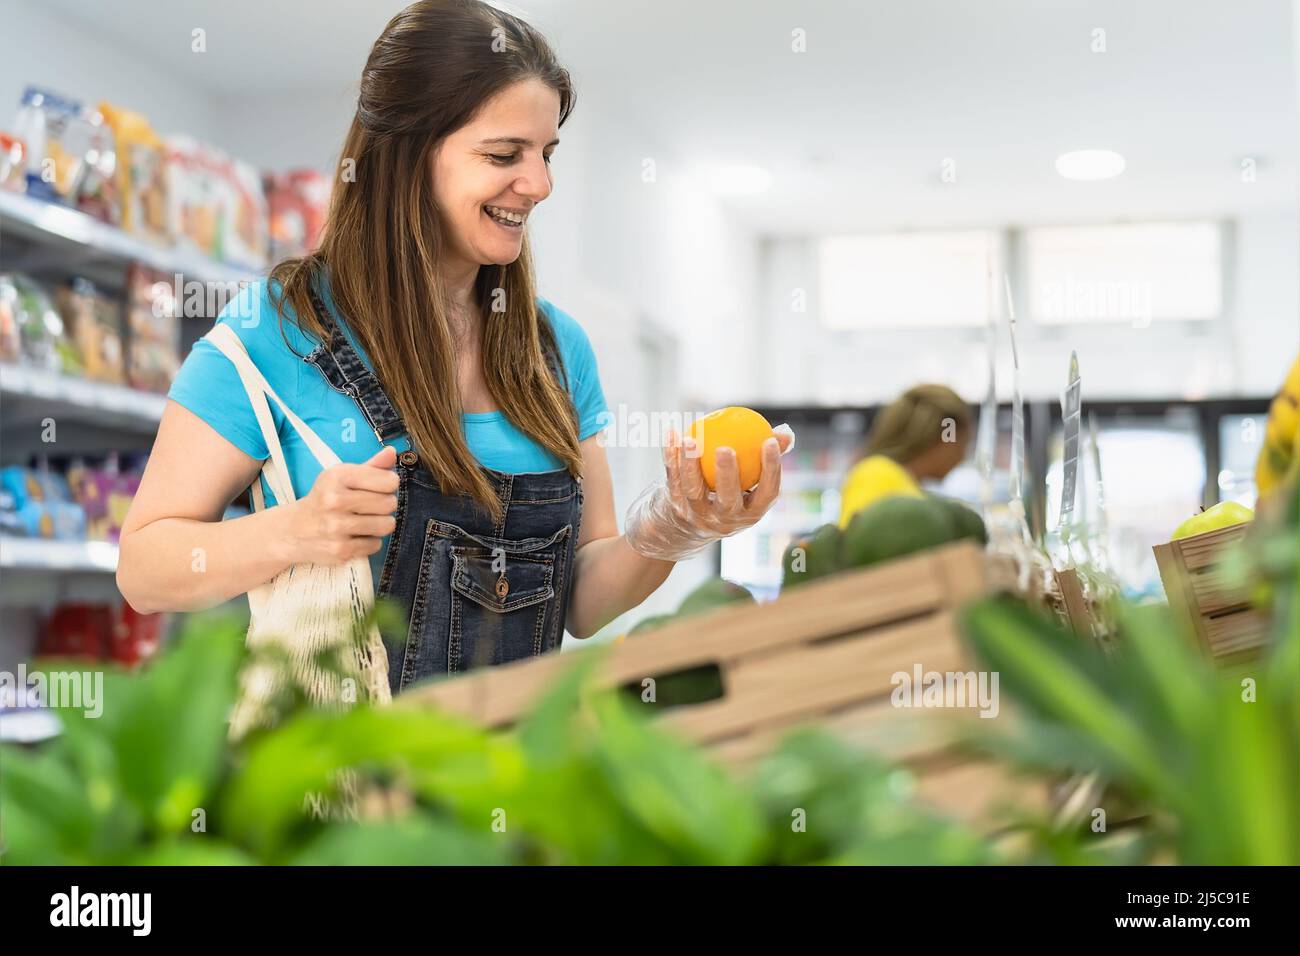 Female customer buying organic fresh fruits inside supermarket Stock Photo